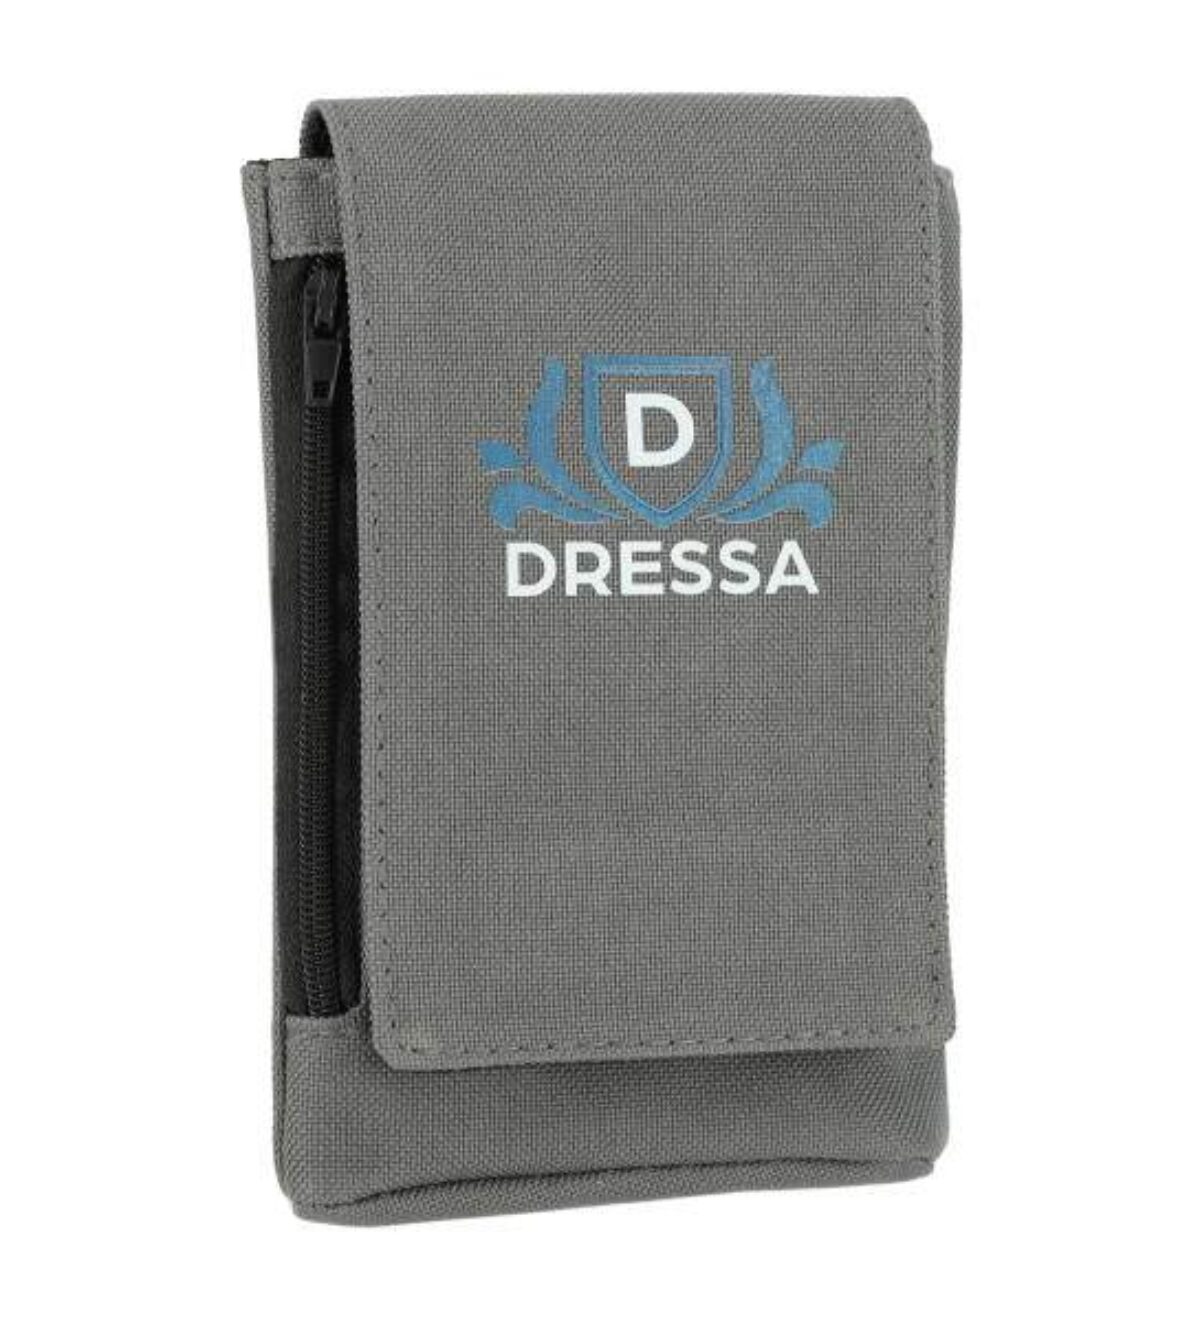 Dressa Phone nyakba akasztható övre fűzhető univerzális telefontok - szürke_d146746_Mirunska.com